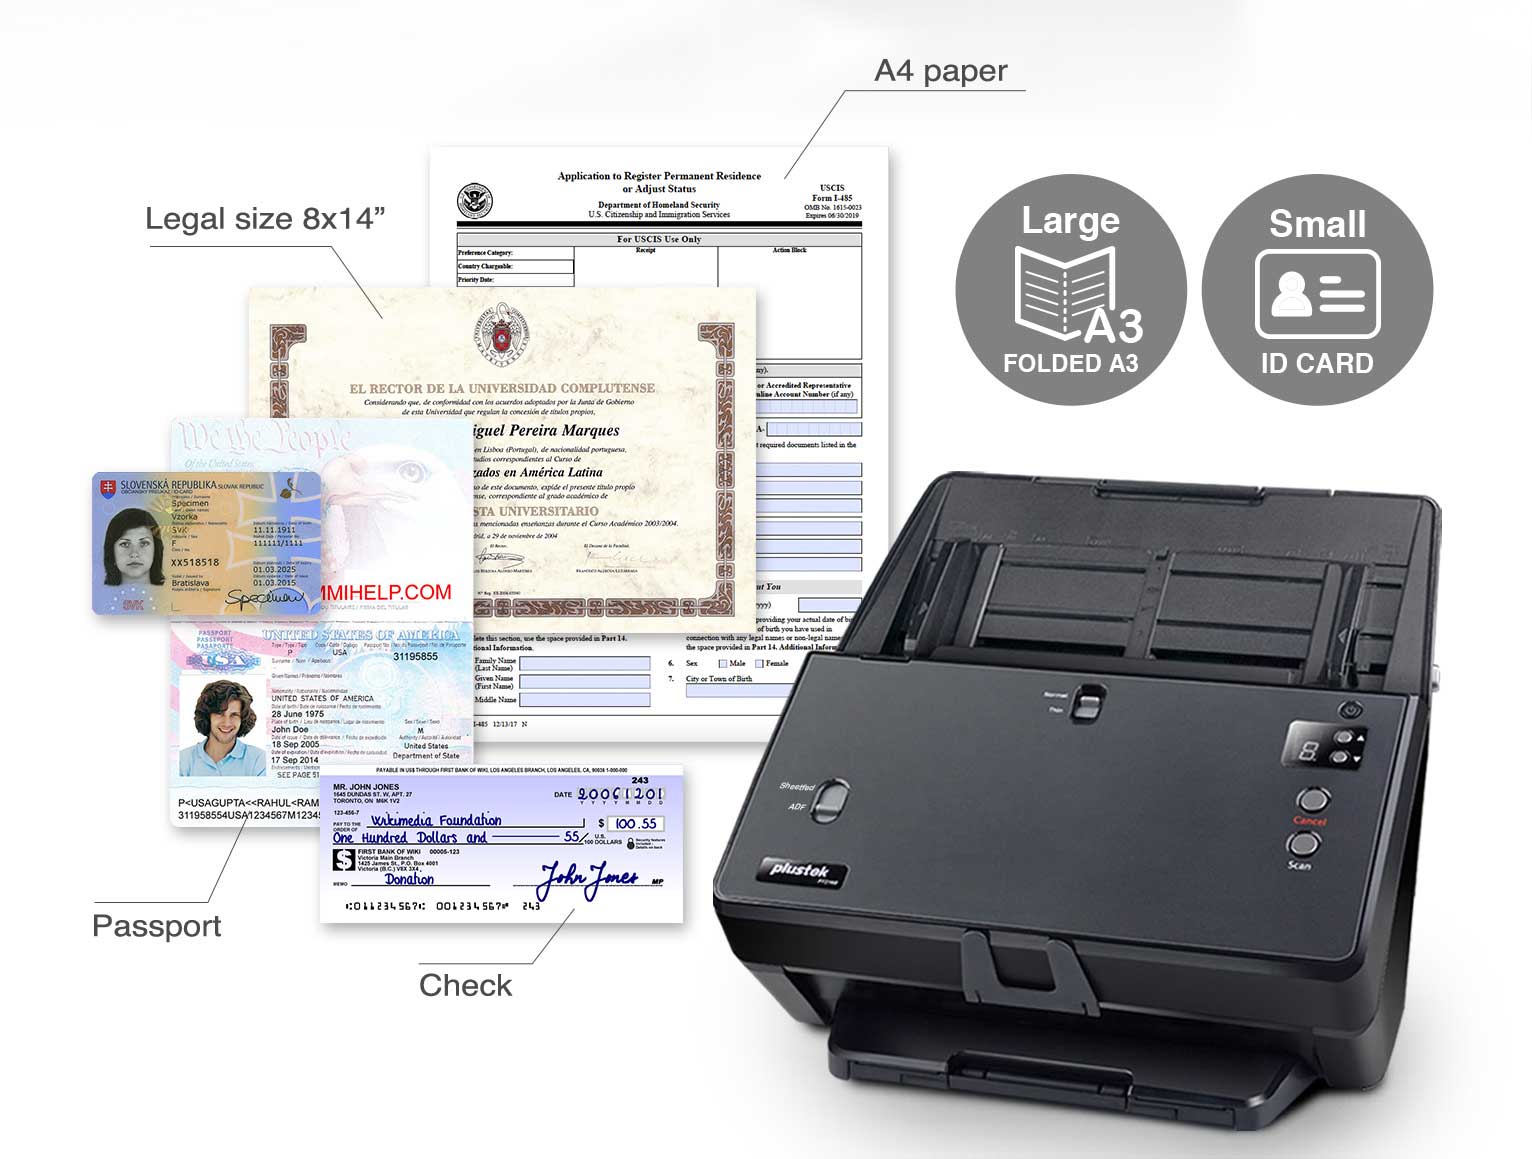 Plustek SmartOffice PT2160 Document Scanner